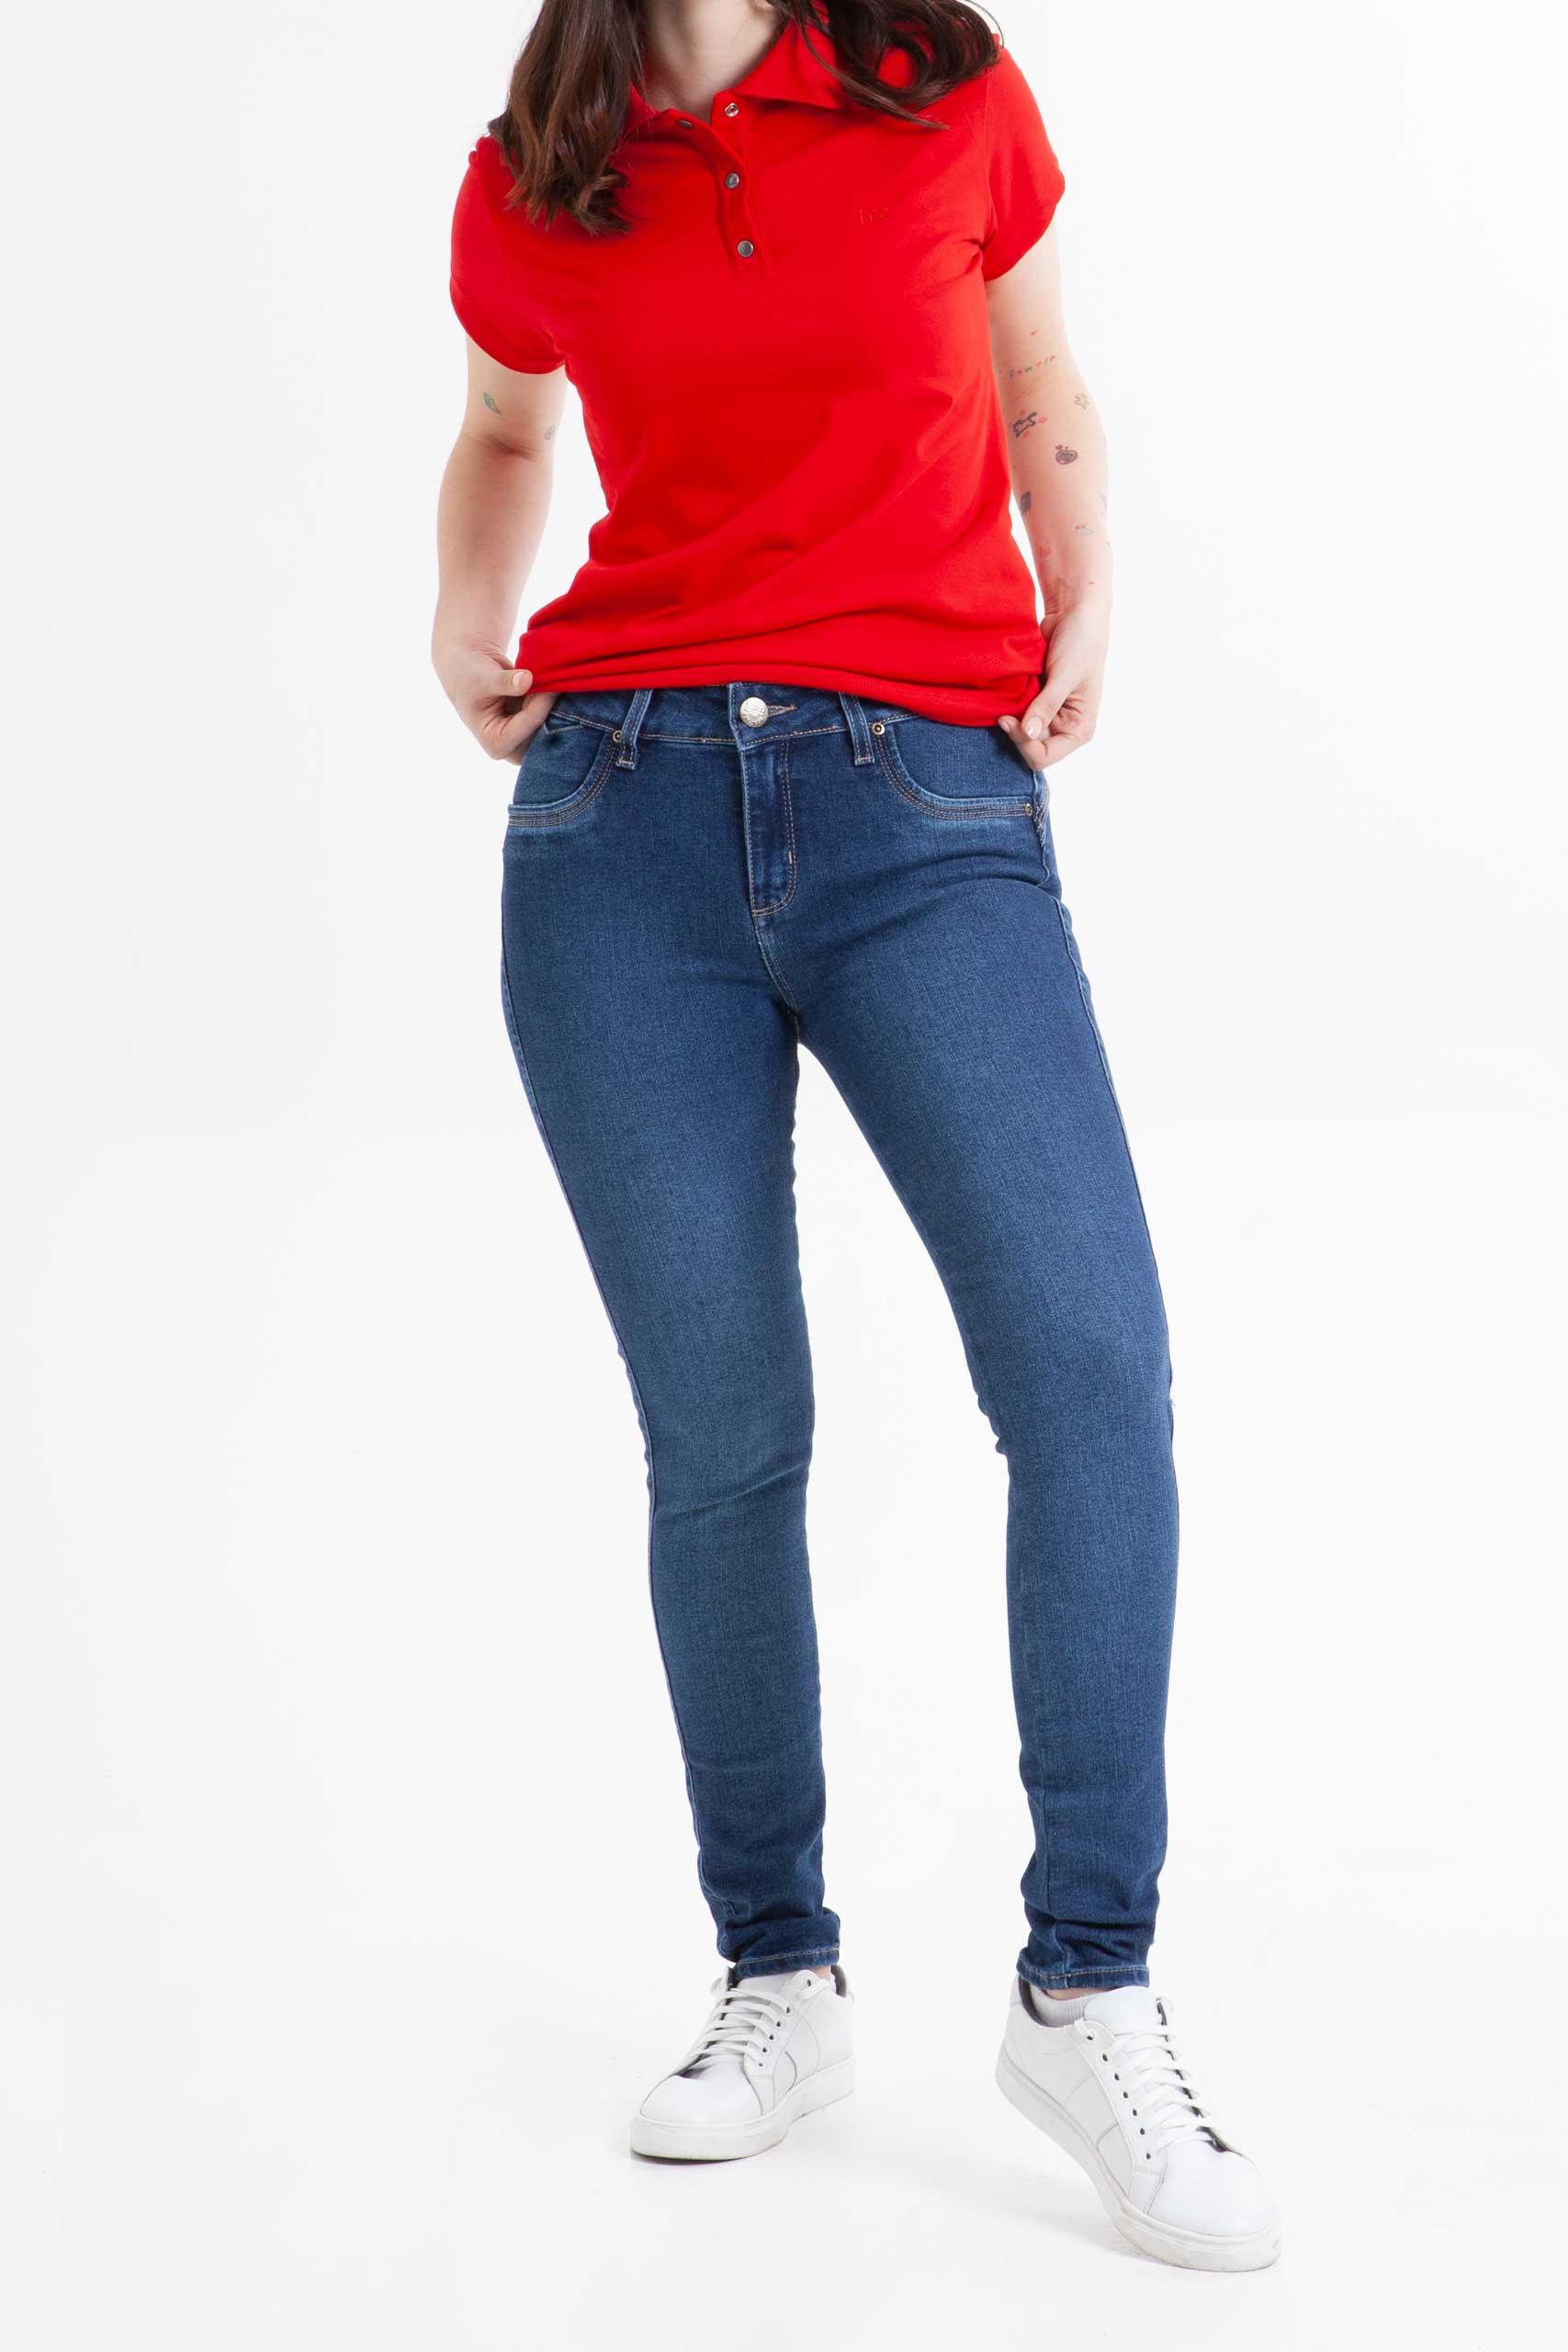 Vista frontal de jean color pepper de pierna slim de marca lee.